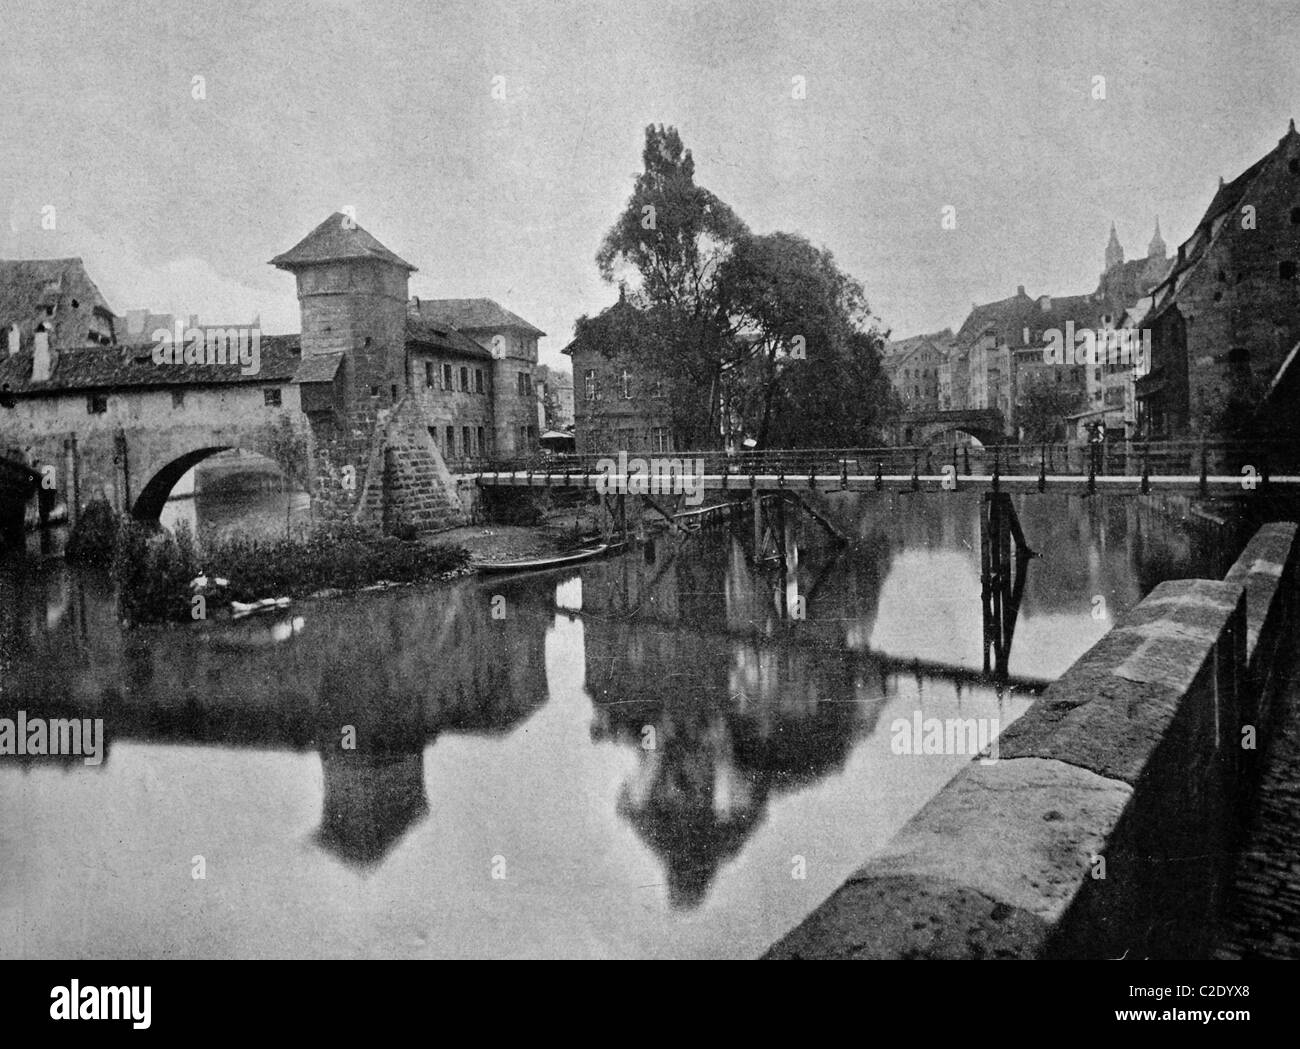 L'un des premiers d'Maxbruecke autotypes bridge, Nuremberg, Allemagne, photographie historique, 1884 Banque D'Images